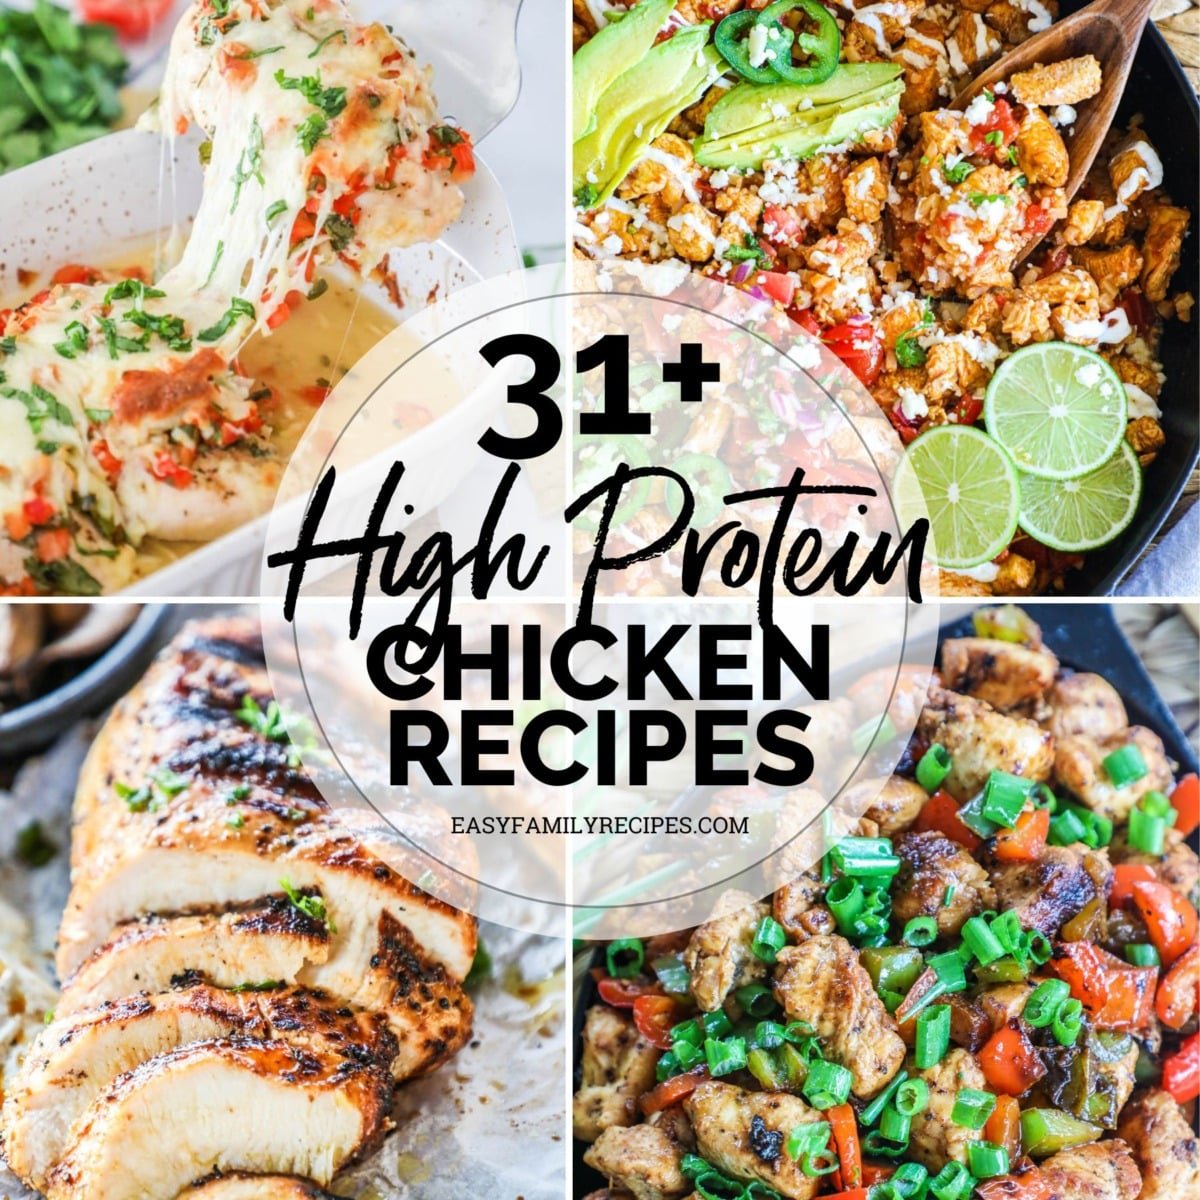 photo collage of 4 high protein chicken recipes - marinated grilled chicken, salsa fresca chicken, healthy chicken burrito bowl, and cajun chickek skillet